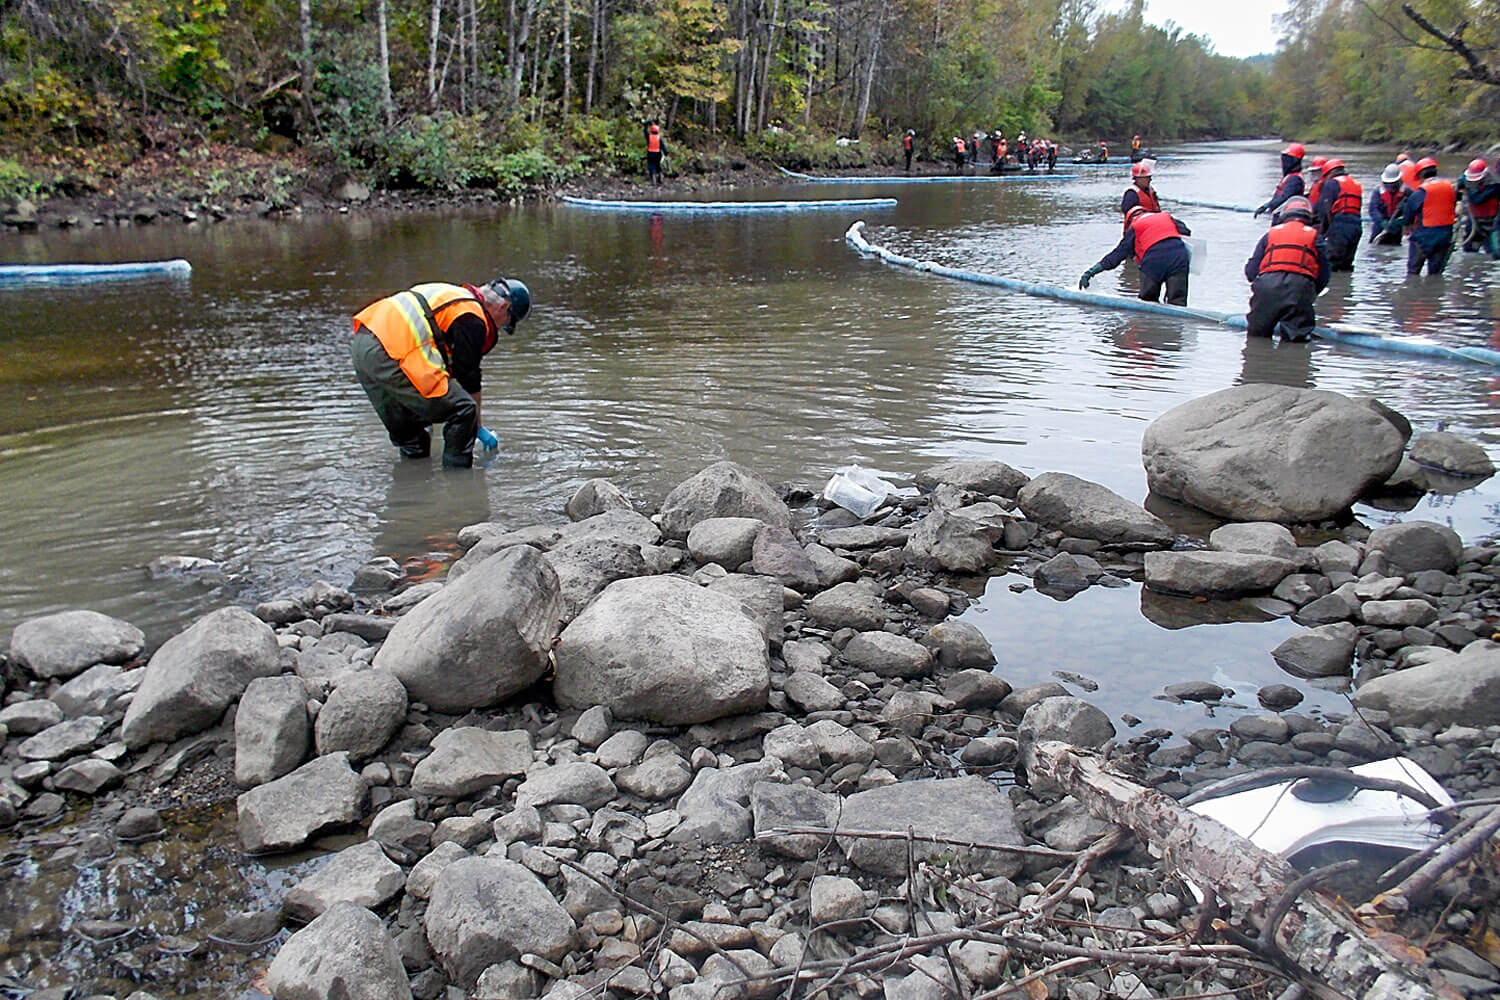 Caractérisation environnementale de la rivière Chaudière suite au déraillement d’un convoi pétrolier survenu le 6 juillet 2013 à Lac-Mégantic